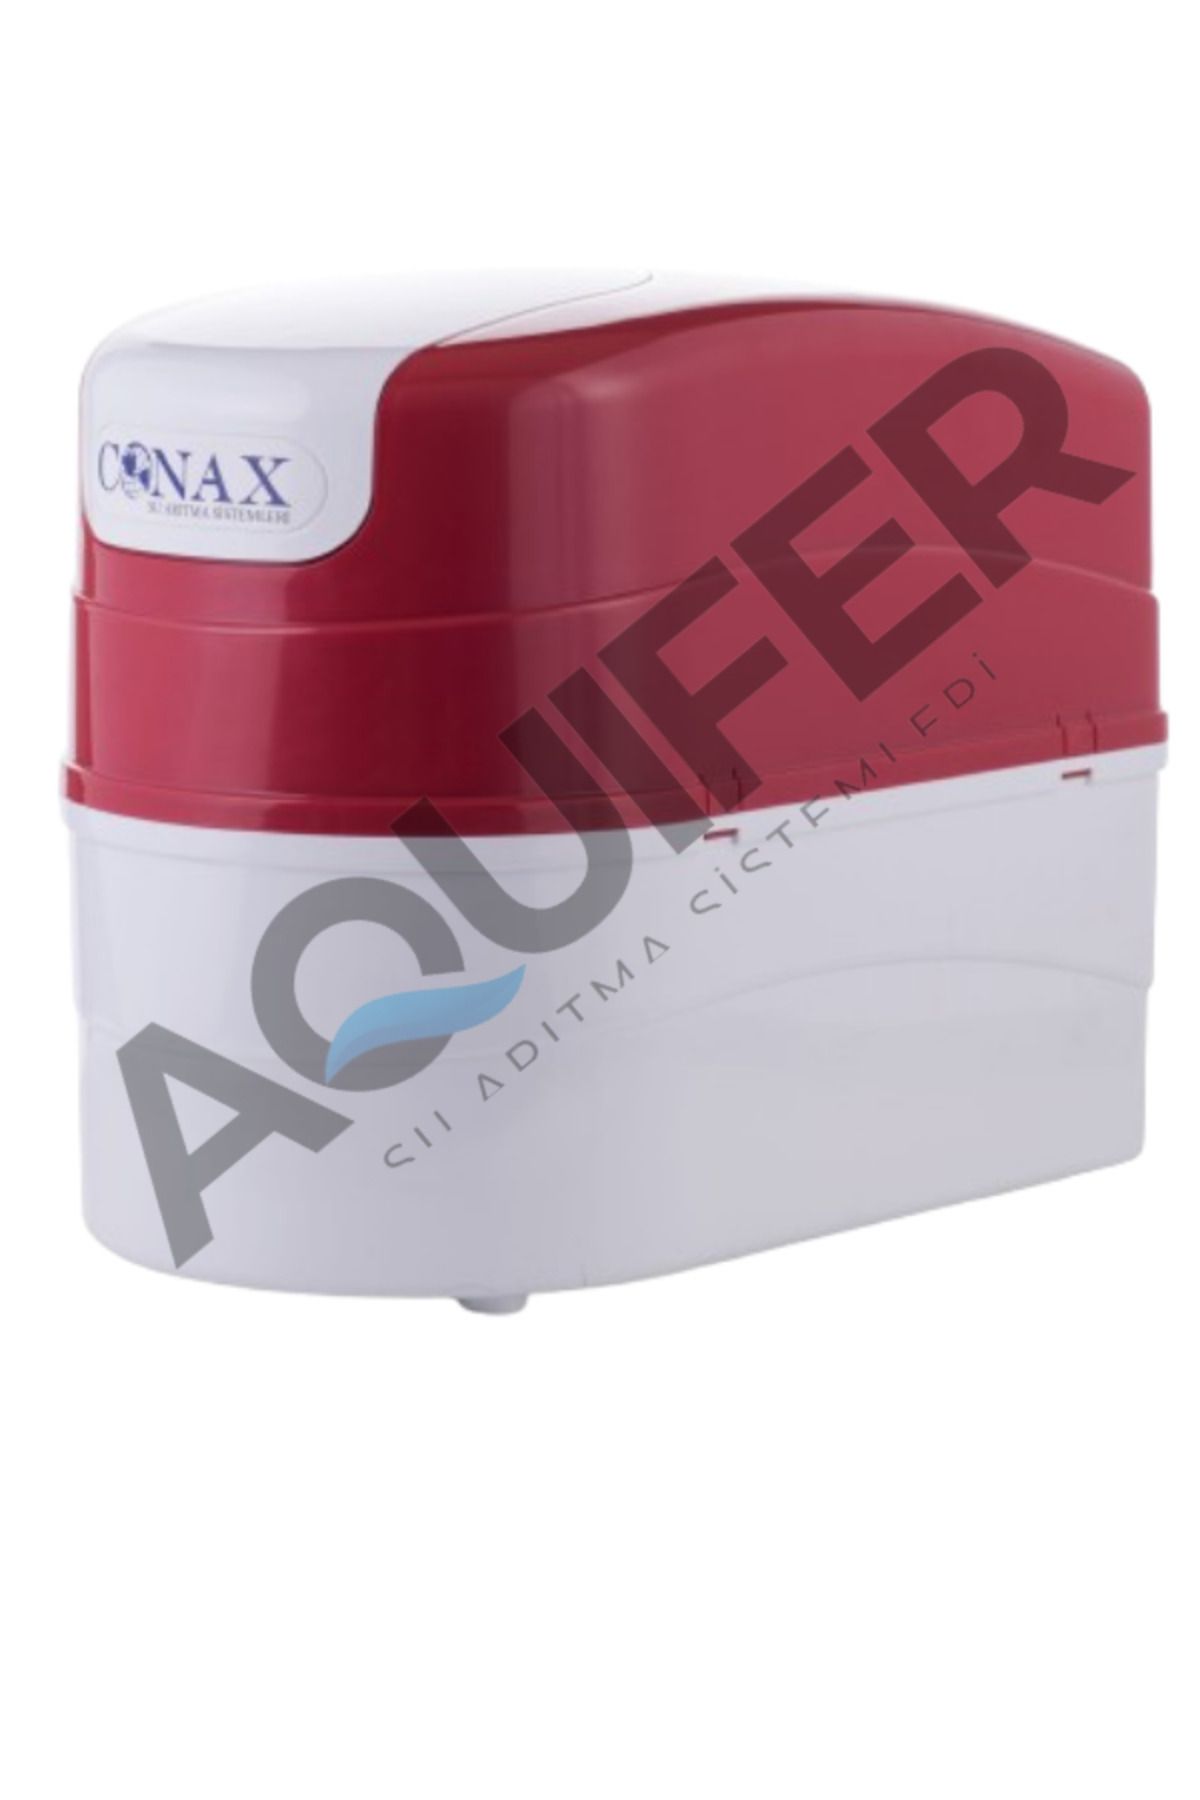 Conax Premium Su Arıtma Cihazı Pompalı